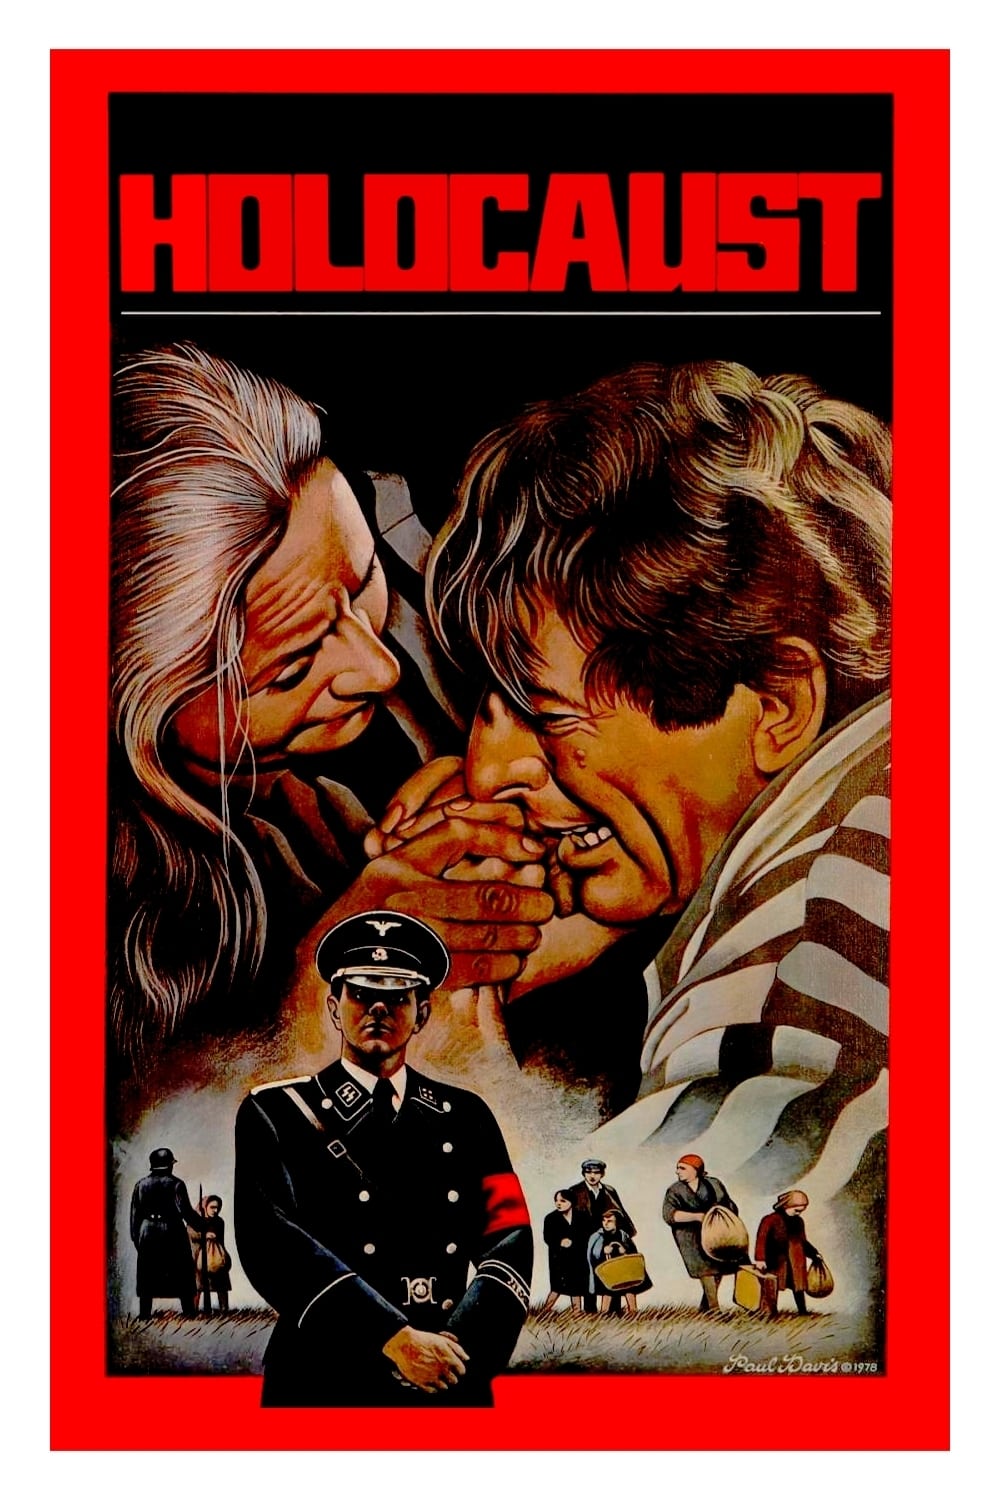 Holocaust (1978)